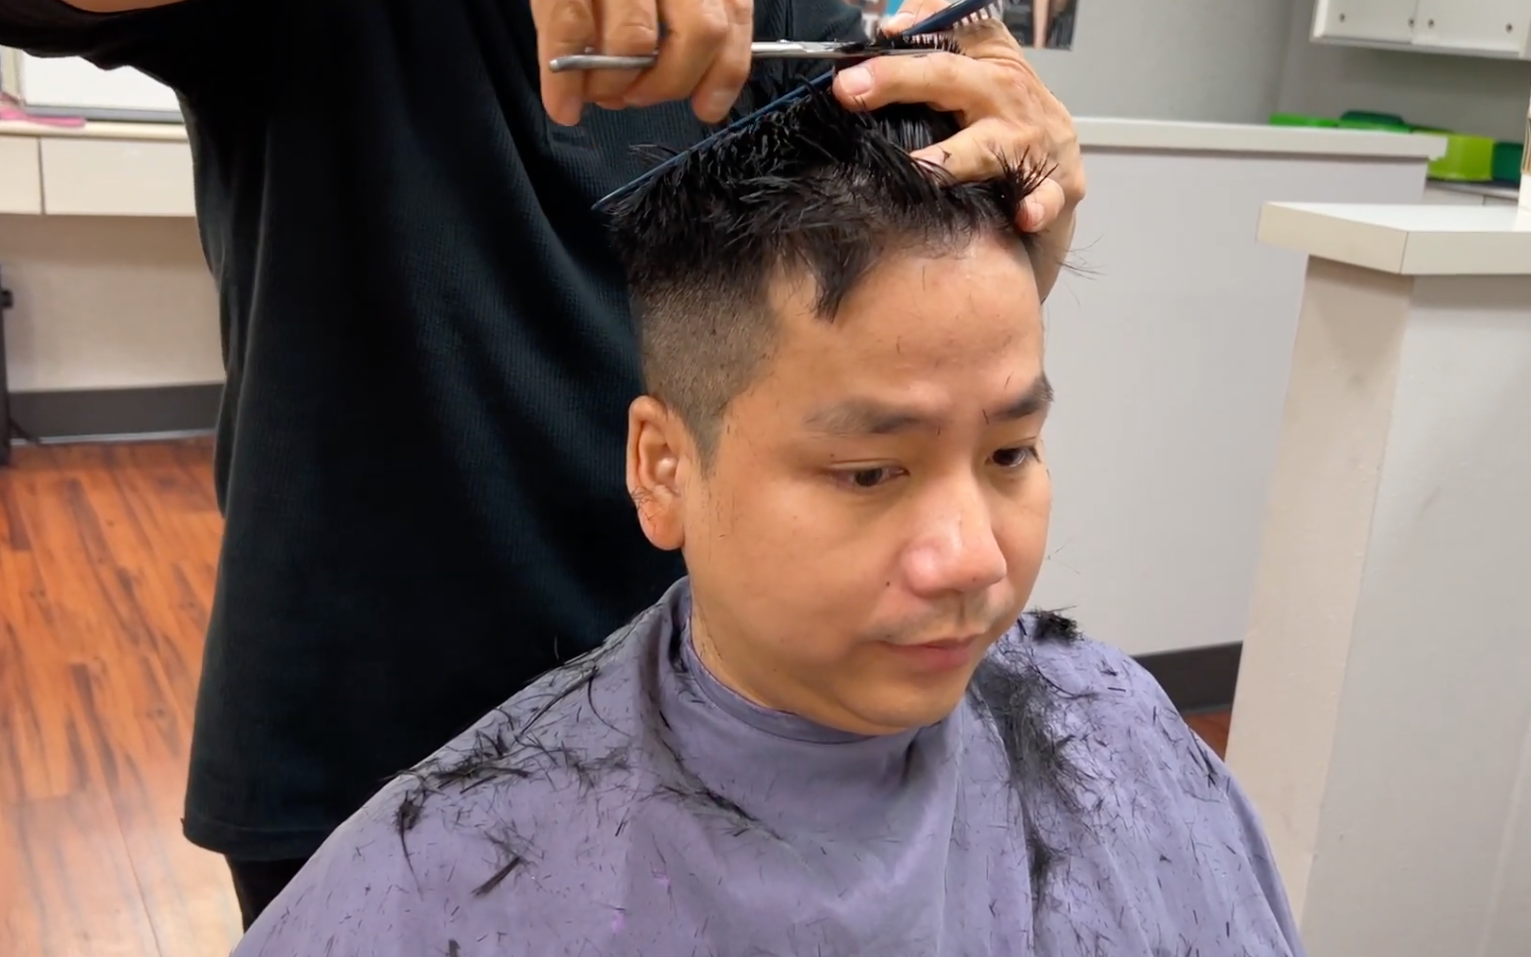 BẤT NGỜ: Khoa Pug cắt tóc sau 2 năm dưỡng dài, rưng rưng nói lời chia tay với khán giả sau 5 năm làm YouTube 